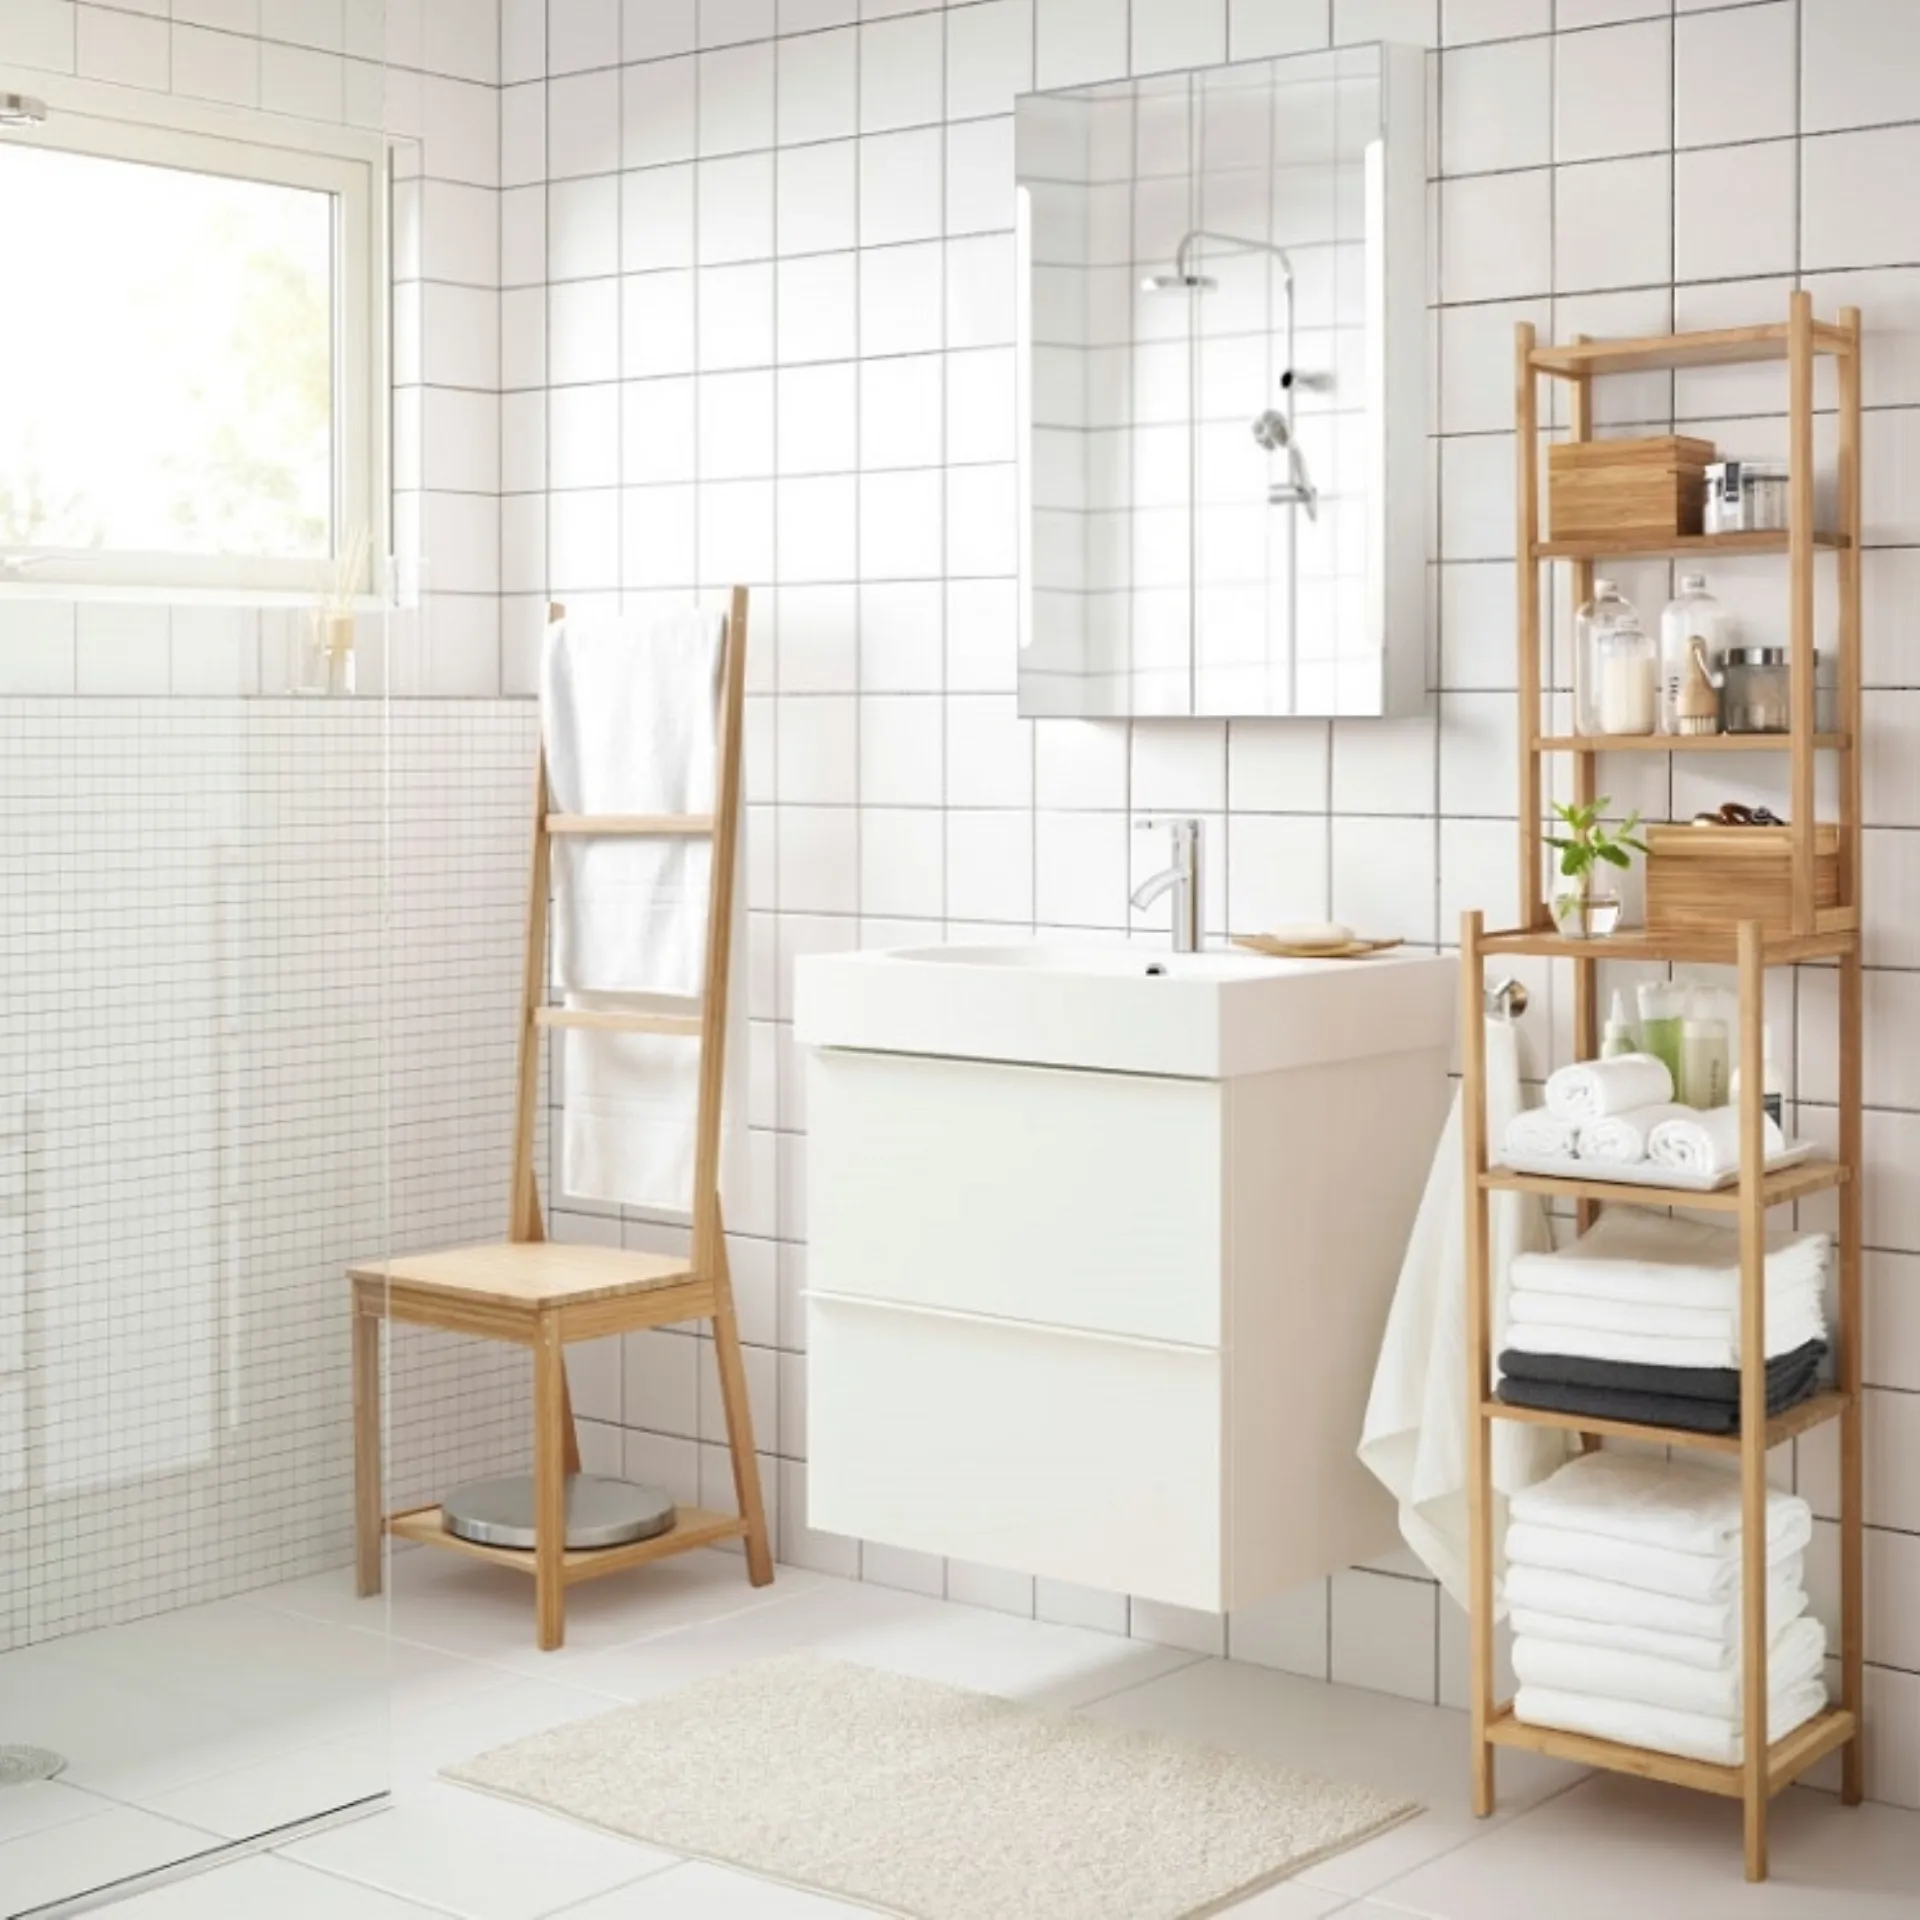 Mobili alti per bagno - IKEA Italia